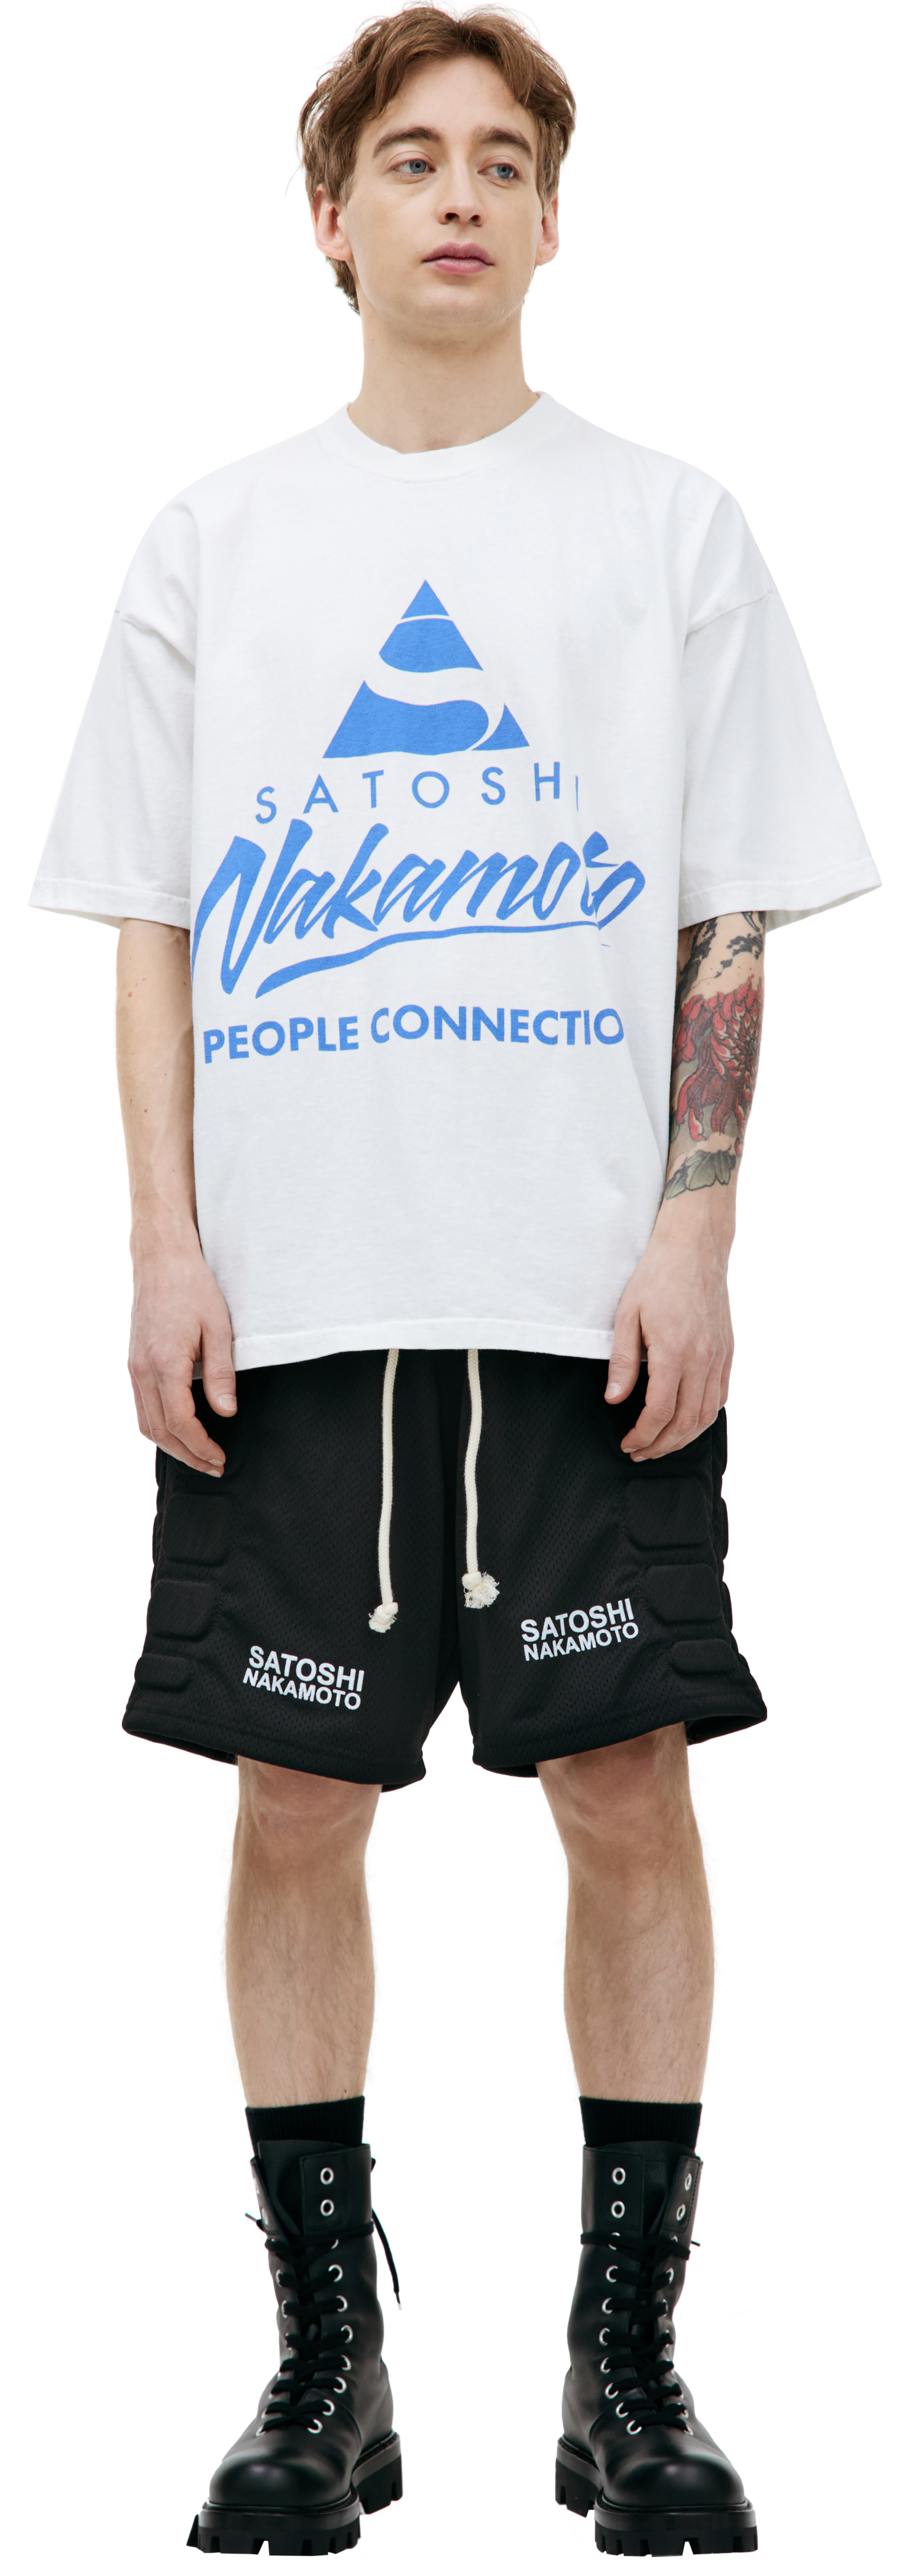 Satoshi Nakamoto People Connection printed t-shirt